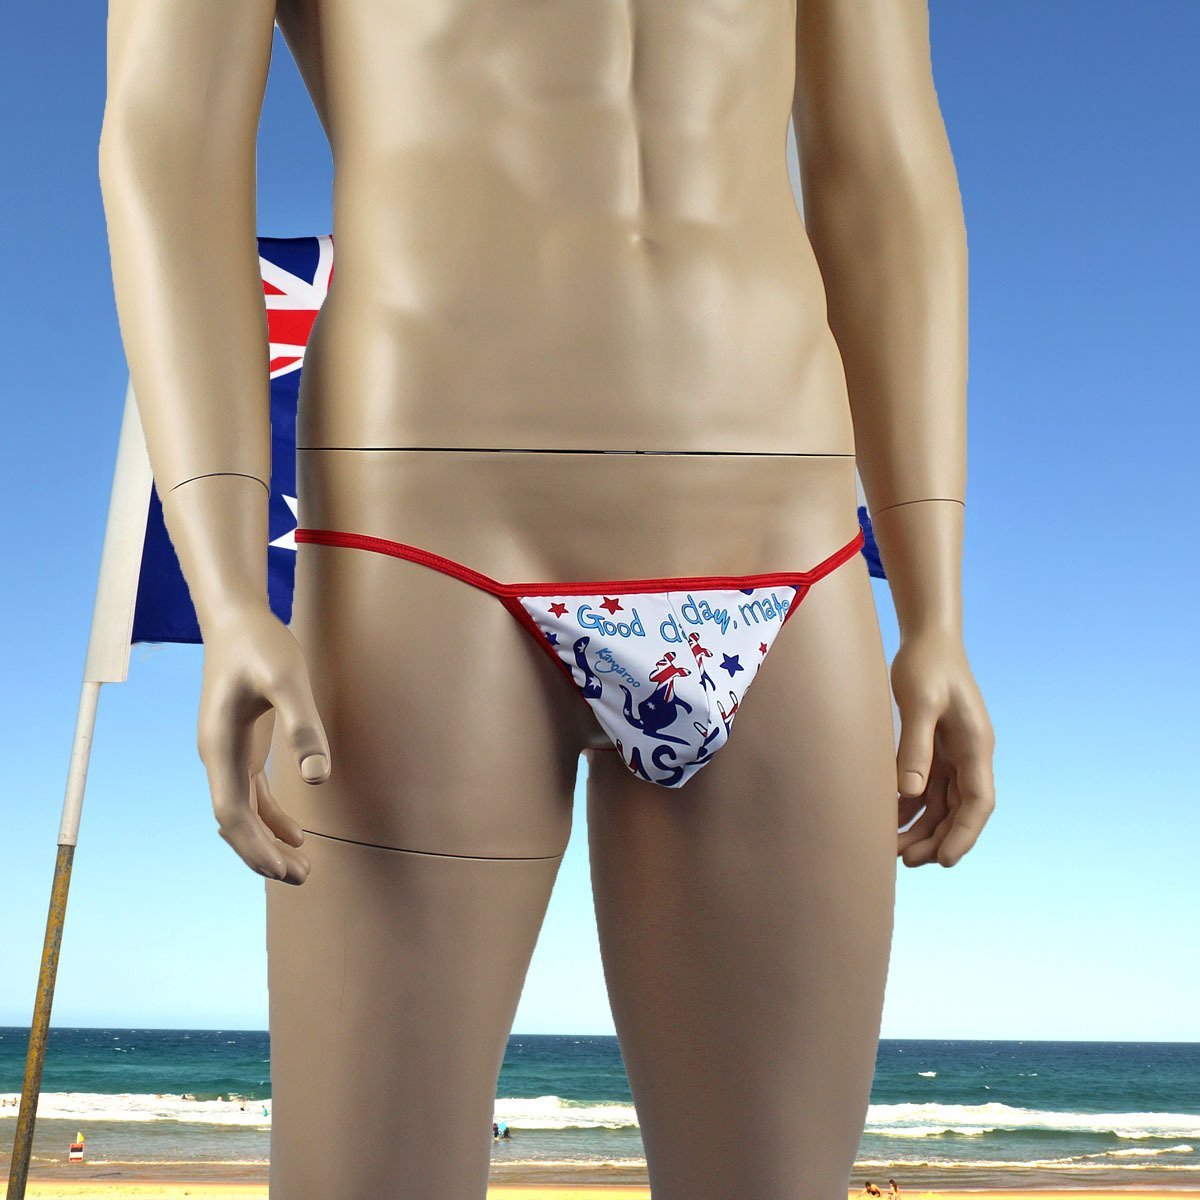 Mens Gidday Australia Day Underwear Pouch G string